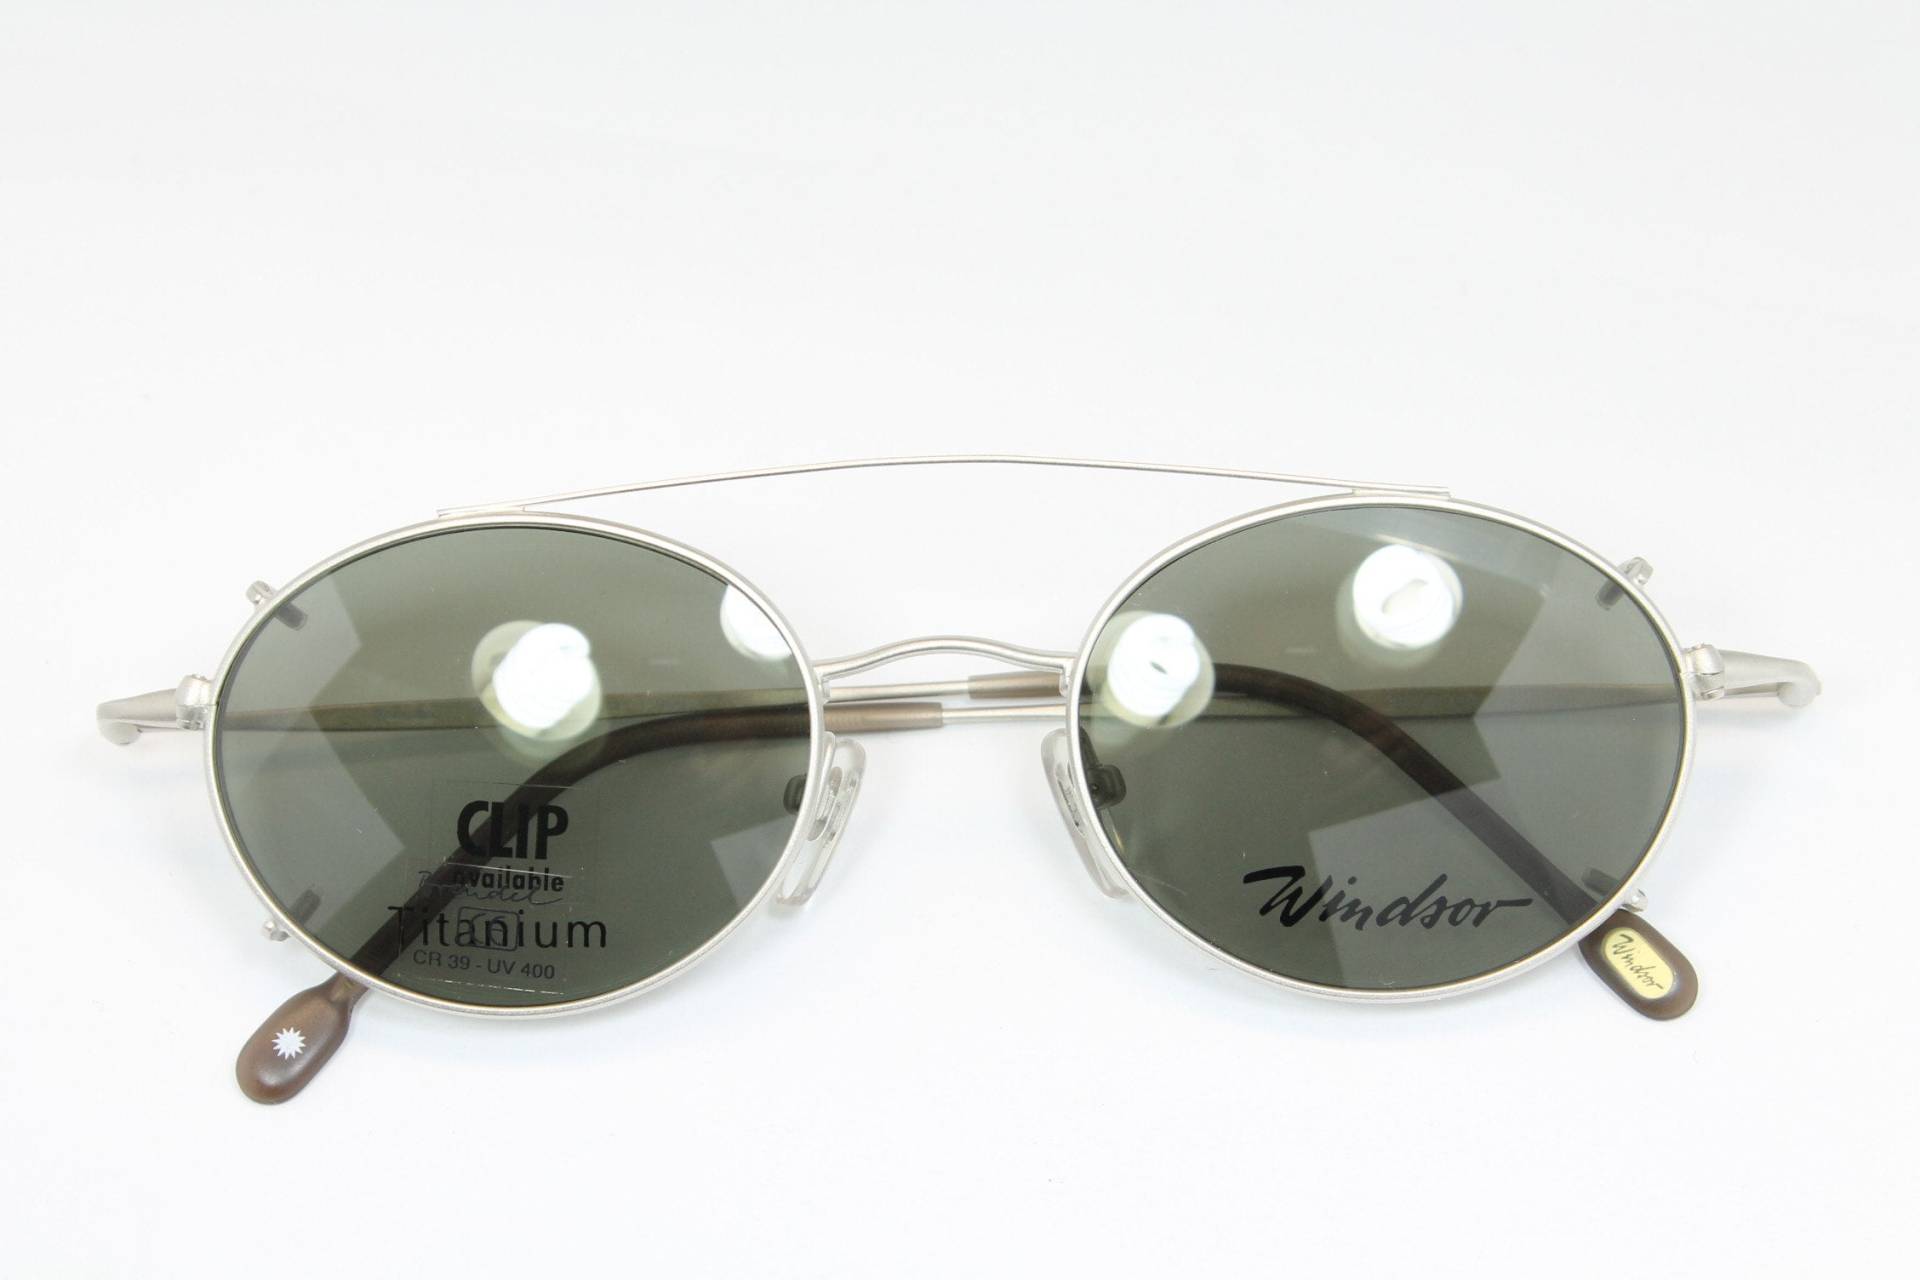 Titan Silber Windsor 821-1 Runde Sonne Clip On Seltene Einzigartige Vintage Brillen Gestell Gläser Lunettes Gafas Bril Glasögon Le05 von VintageGermanGlasses